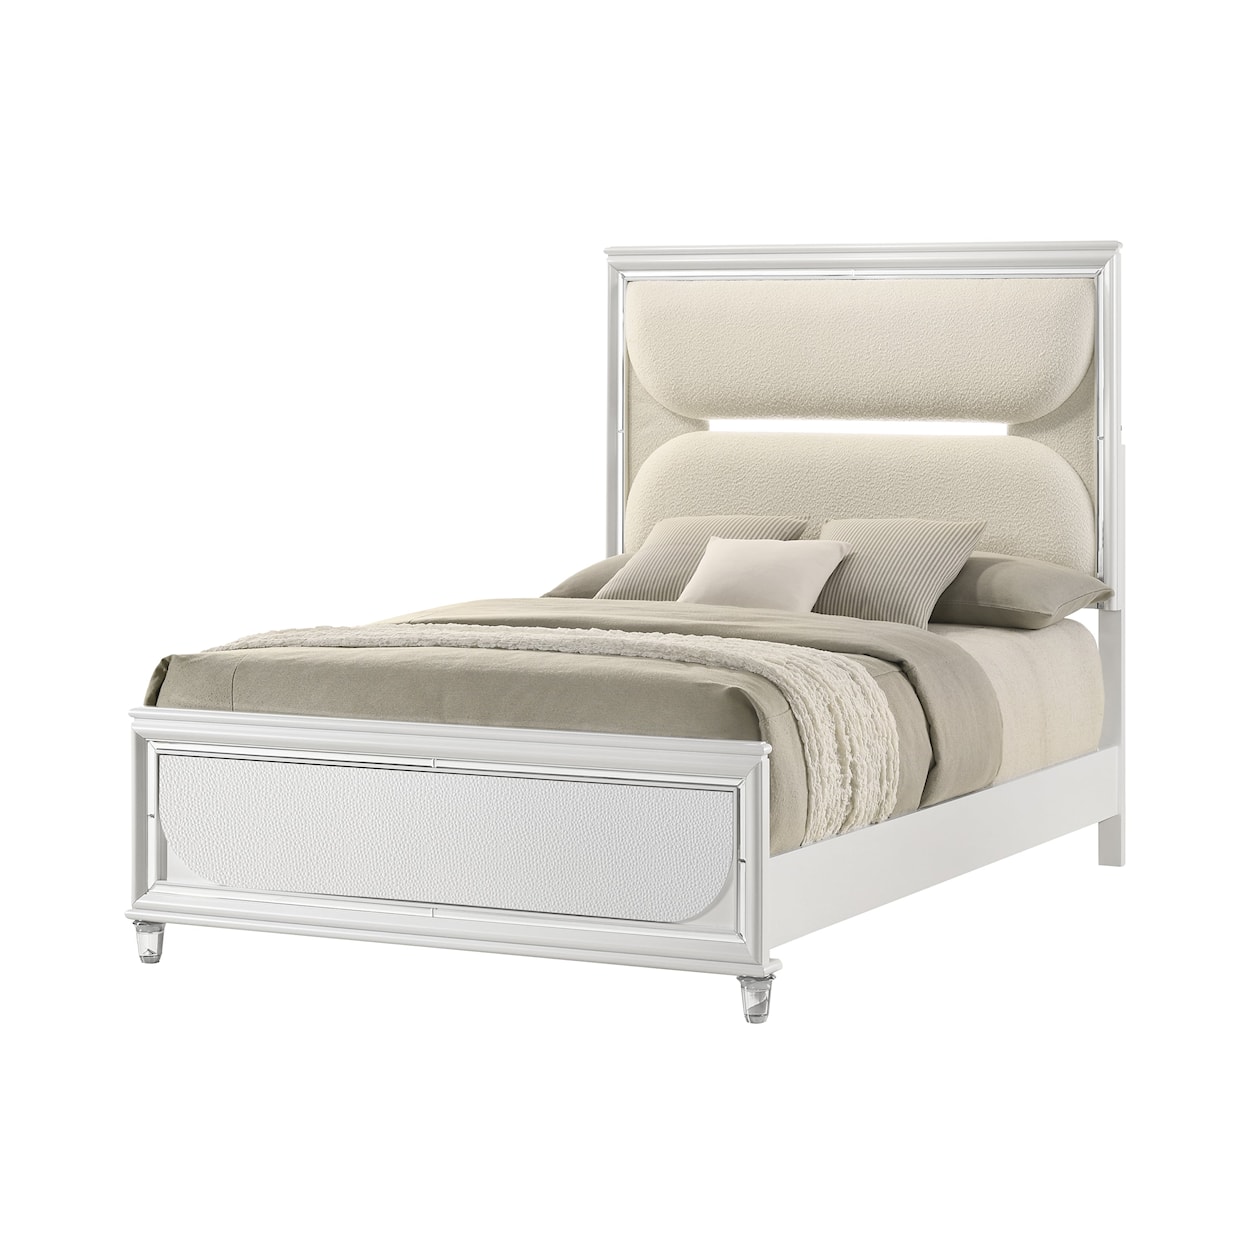 CM EDEN Queen Upholstered Bed